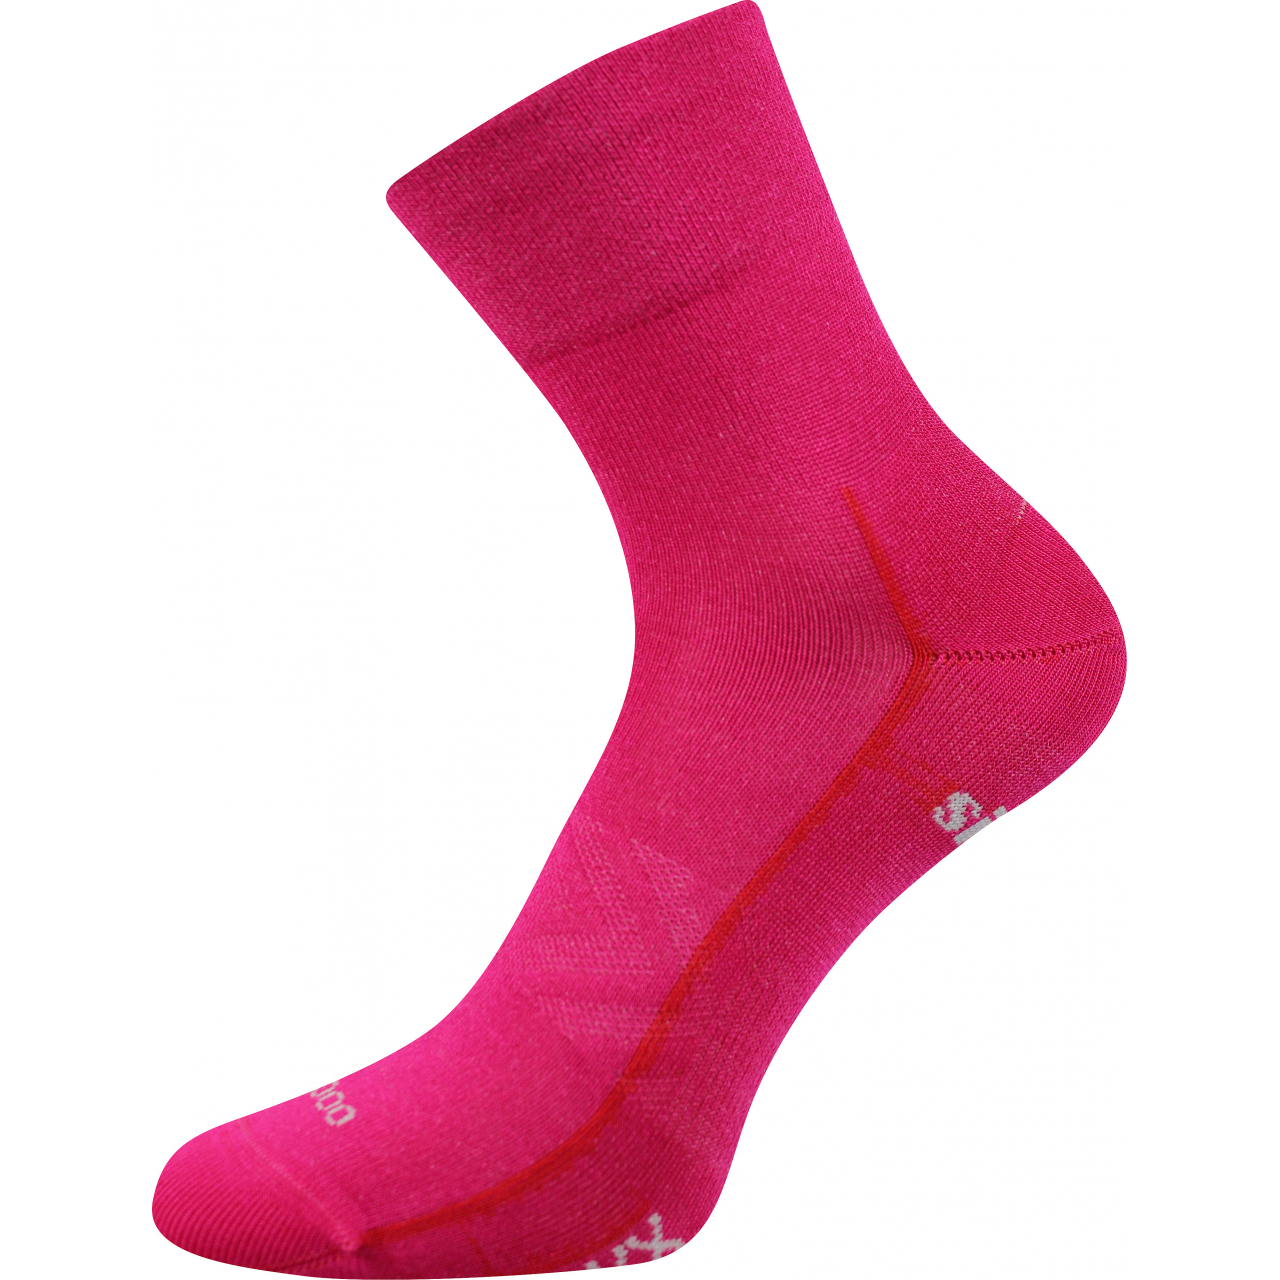 Ponožky sportovní unisex Voxx Baeron - tmavě růžové, 35-38